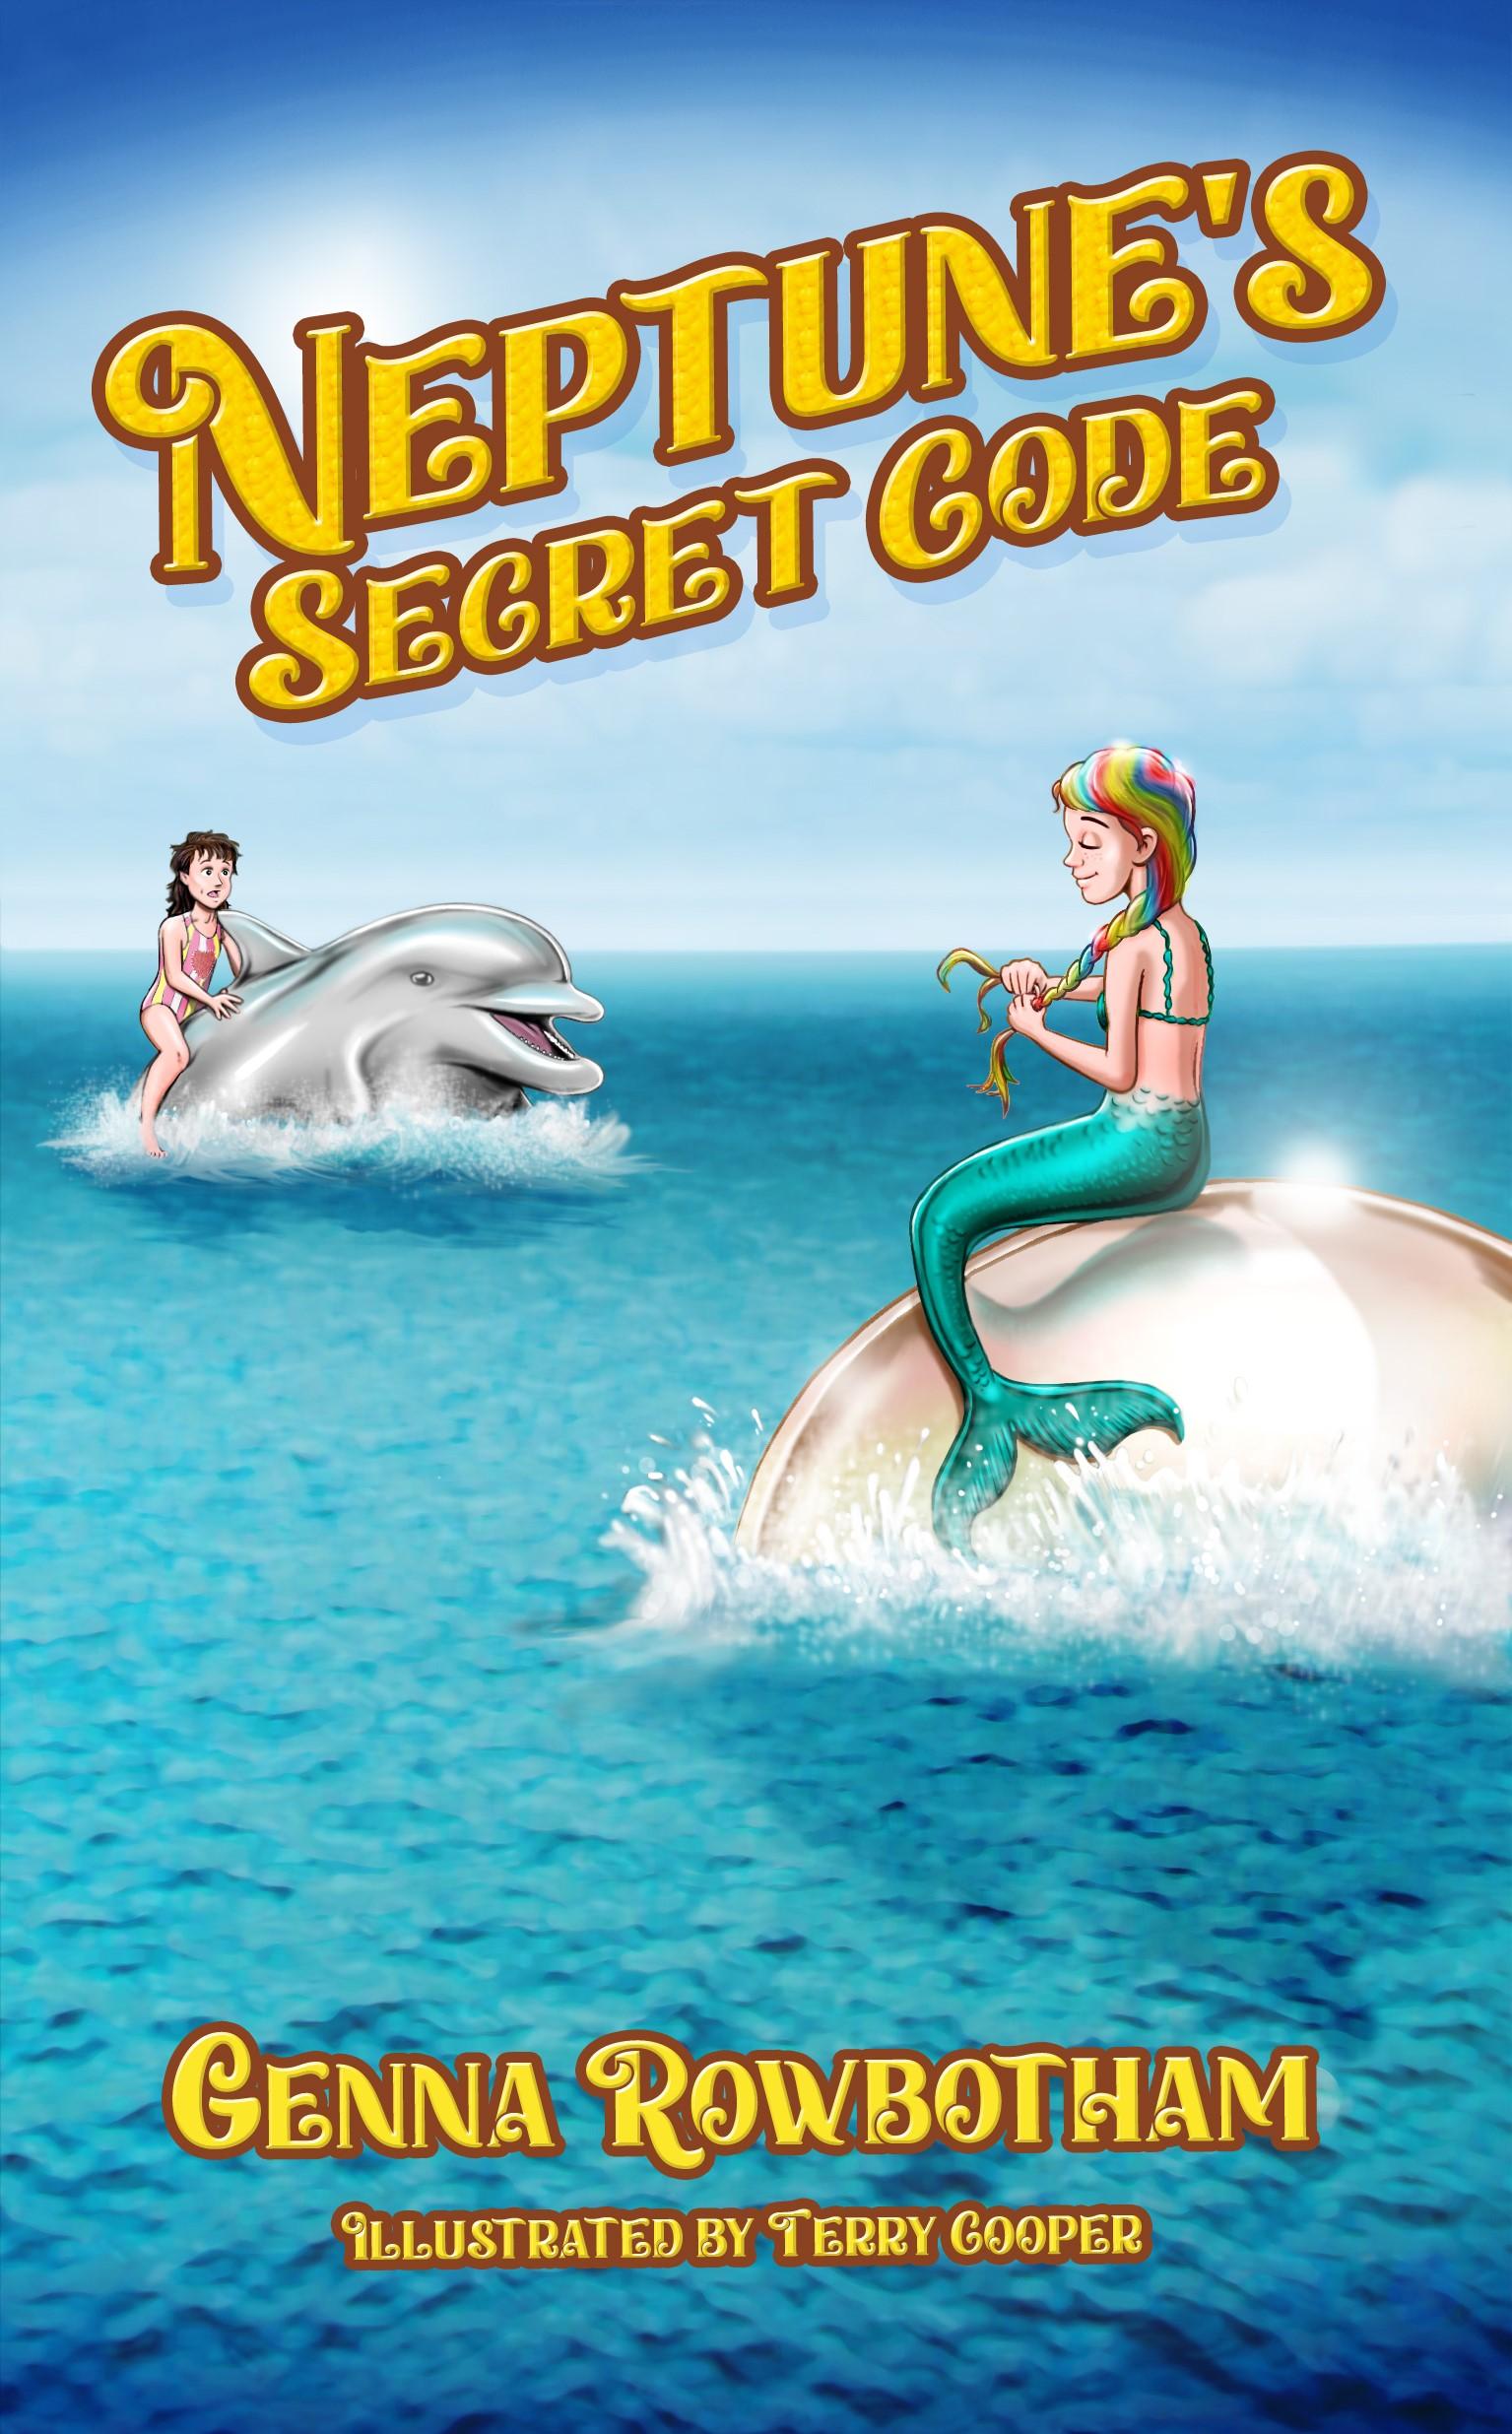 Neptune's Secret Code